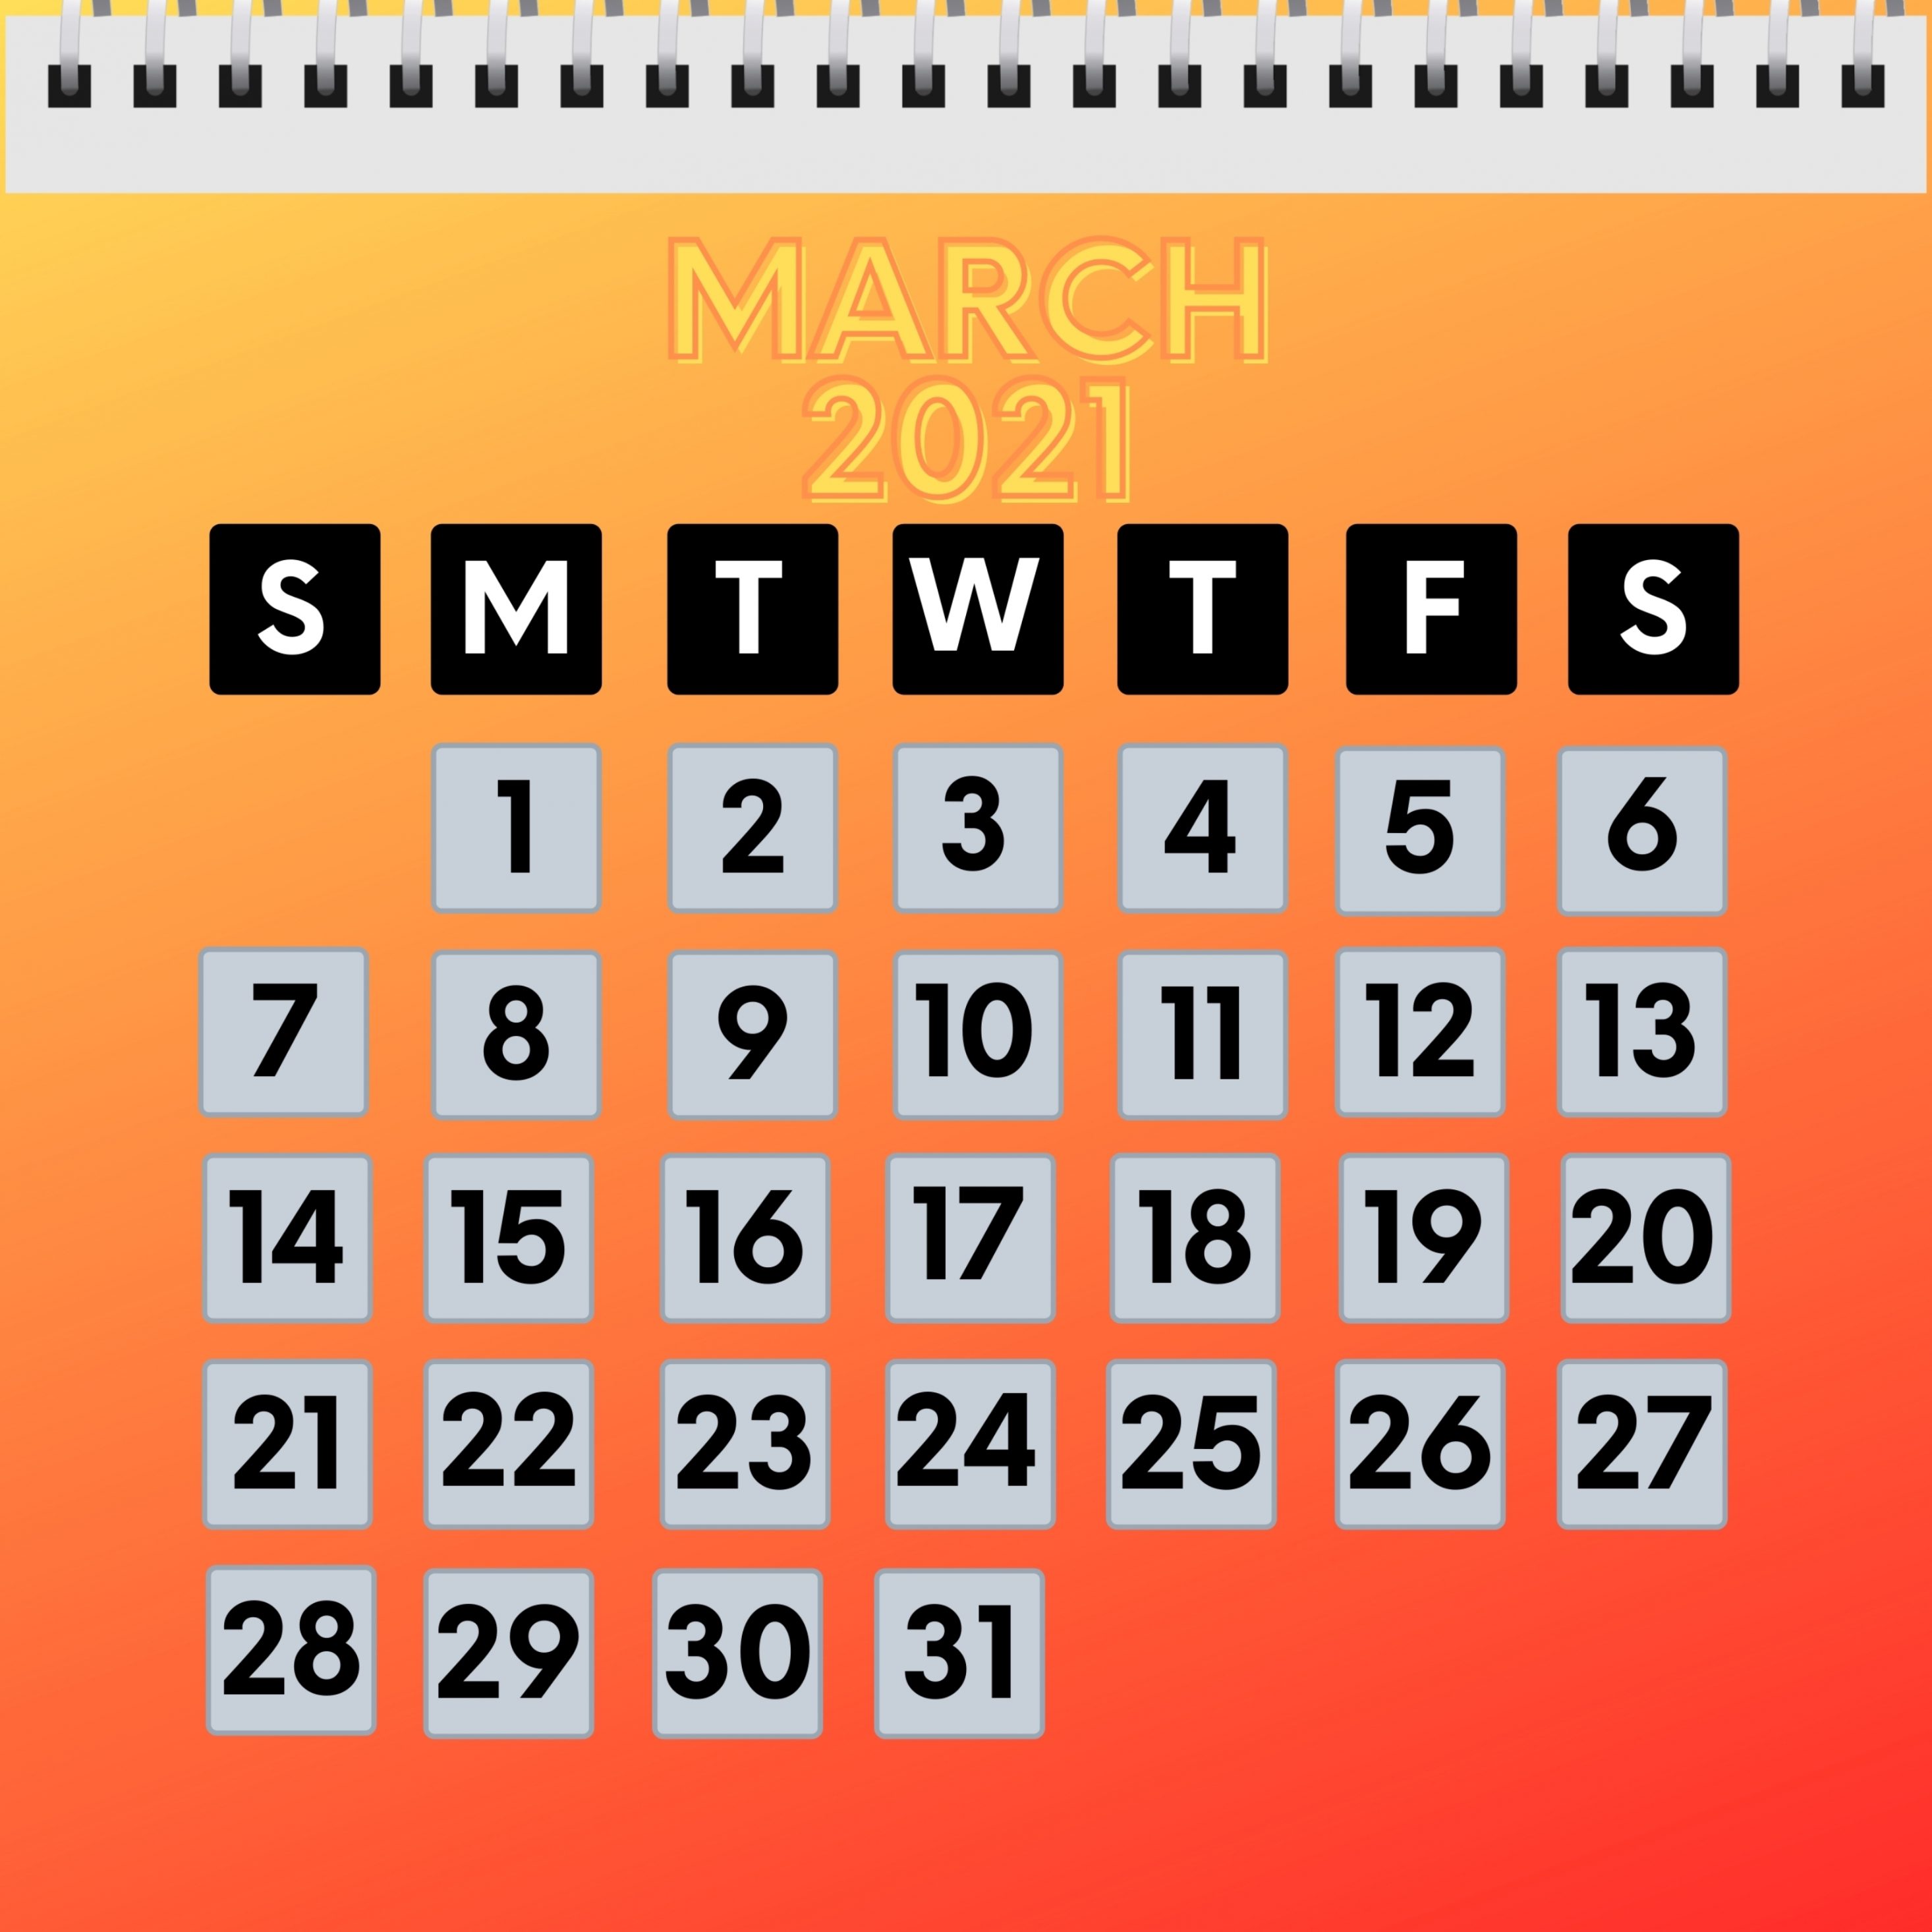 2932x2932 iPad Pro wallpaper 4k March 2021 Calendar iPad Wallpaper 2932x2932 pixels resolution